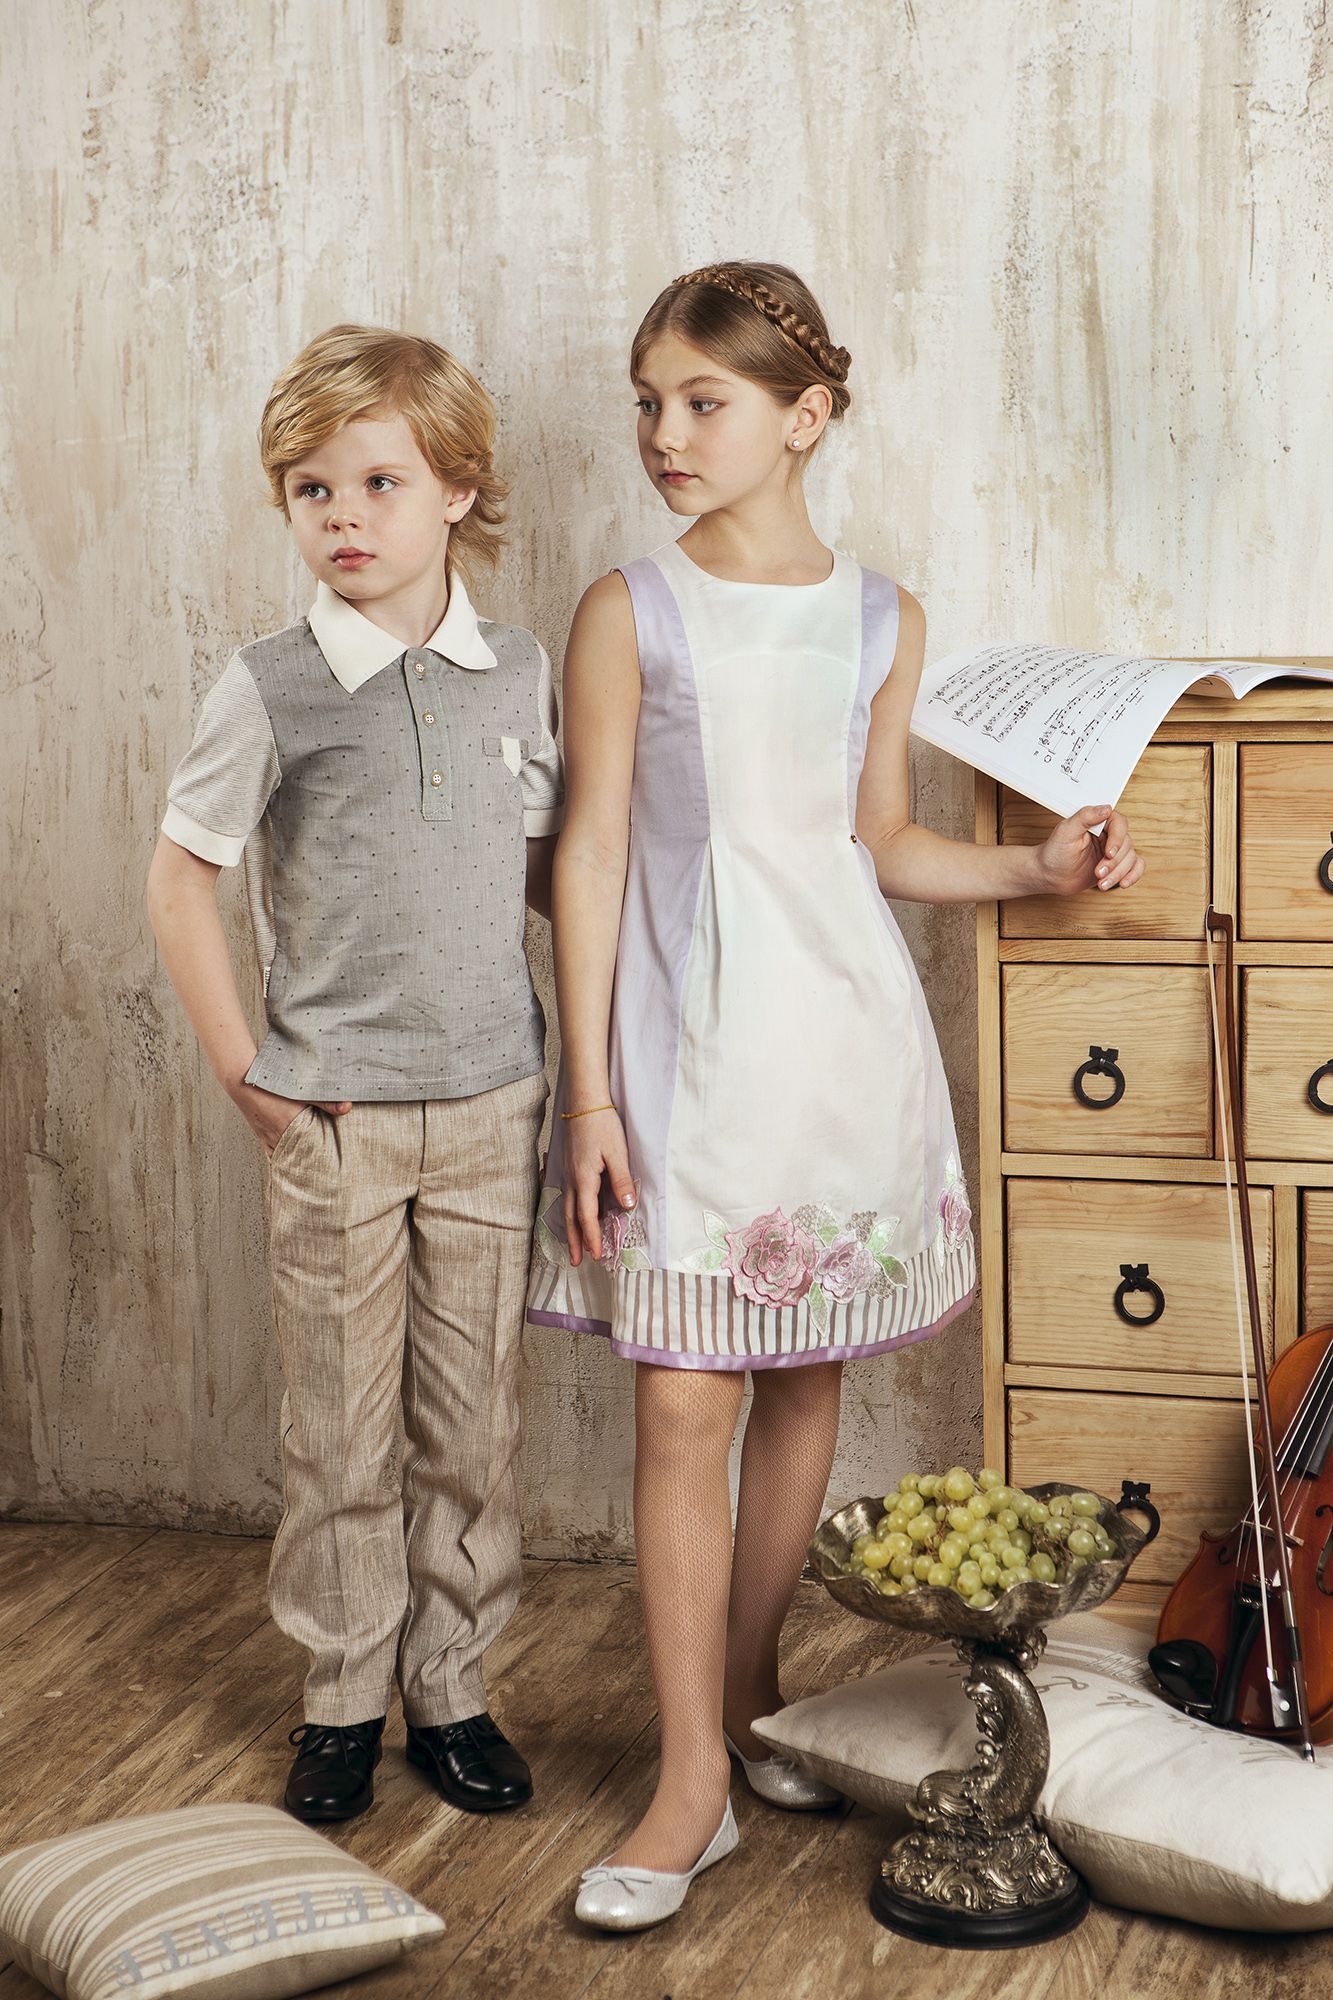 Мальчики помладше с доставкой. Одежда для детей. Красивая детская одежда. Дети в красивой одежде. Мальчик в платье.